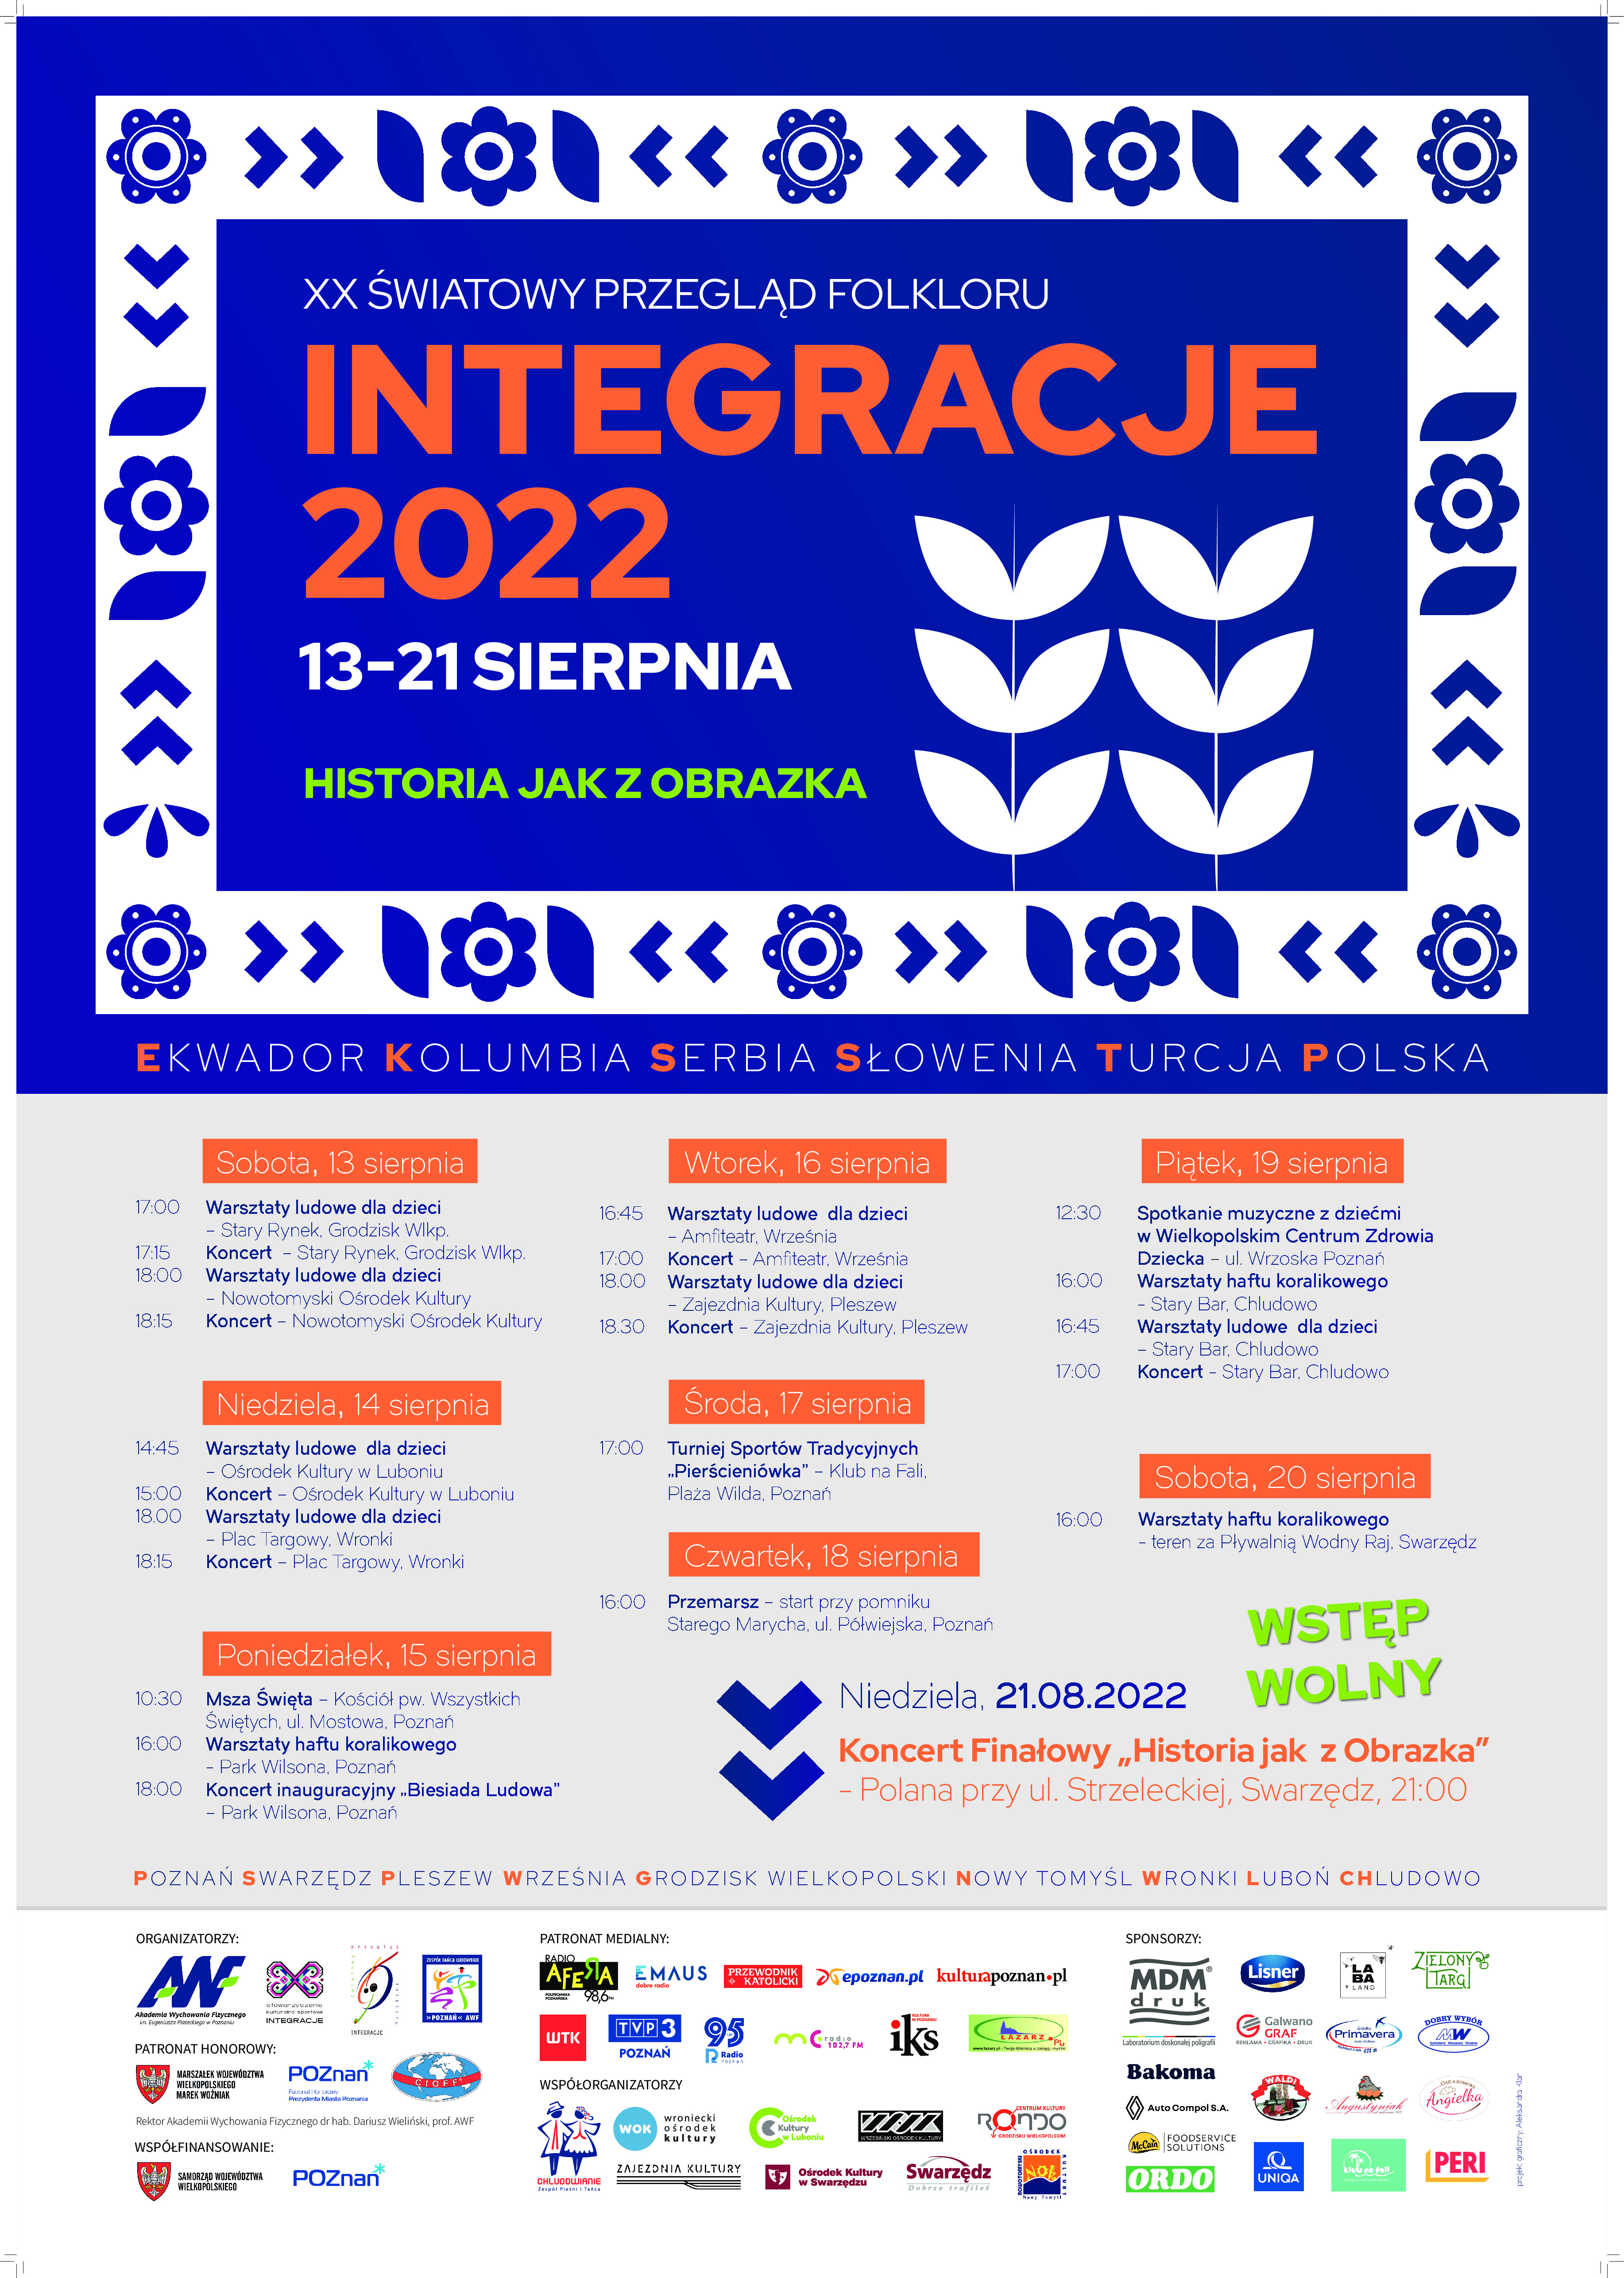 Festiwal "INTEGRACJE"